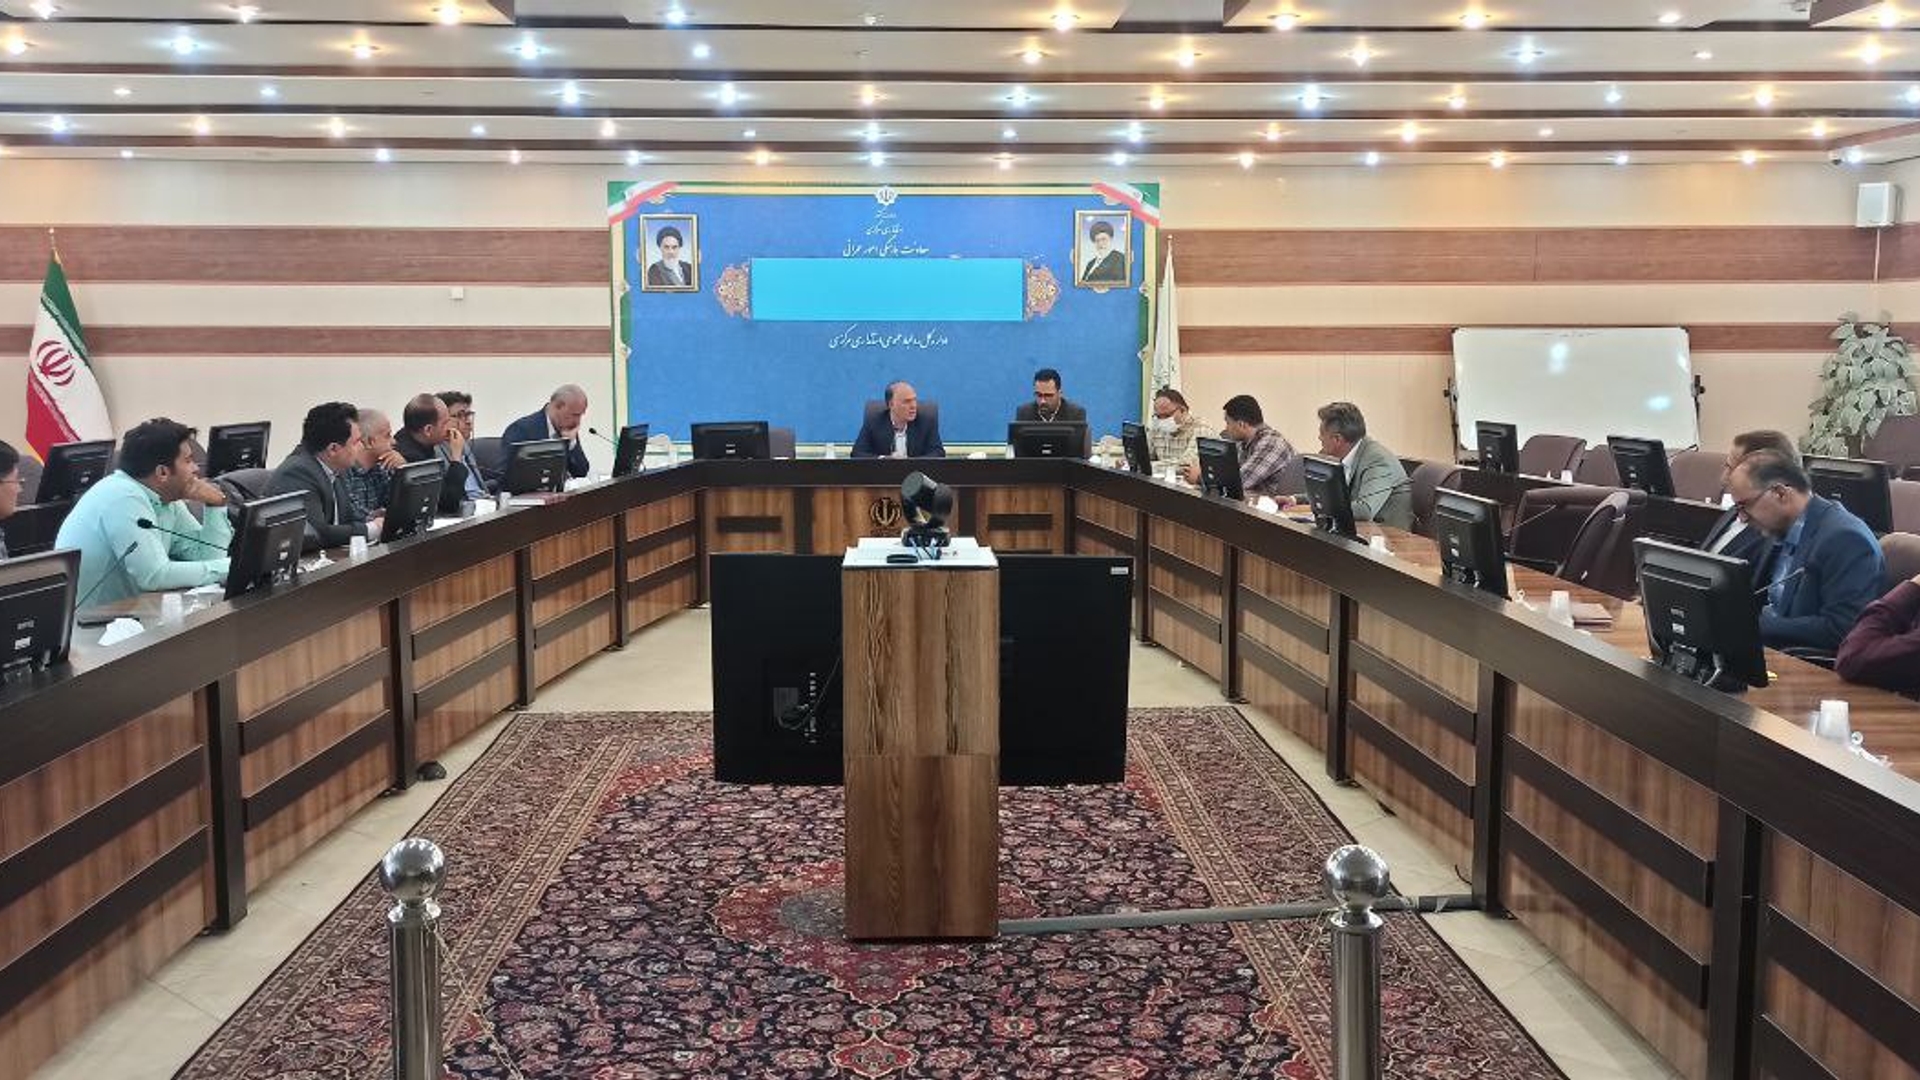 جلسه بررسی عملیات اجرایی پروژه آزاد راه اراک-خرم آباد برگزار شد.